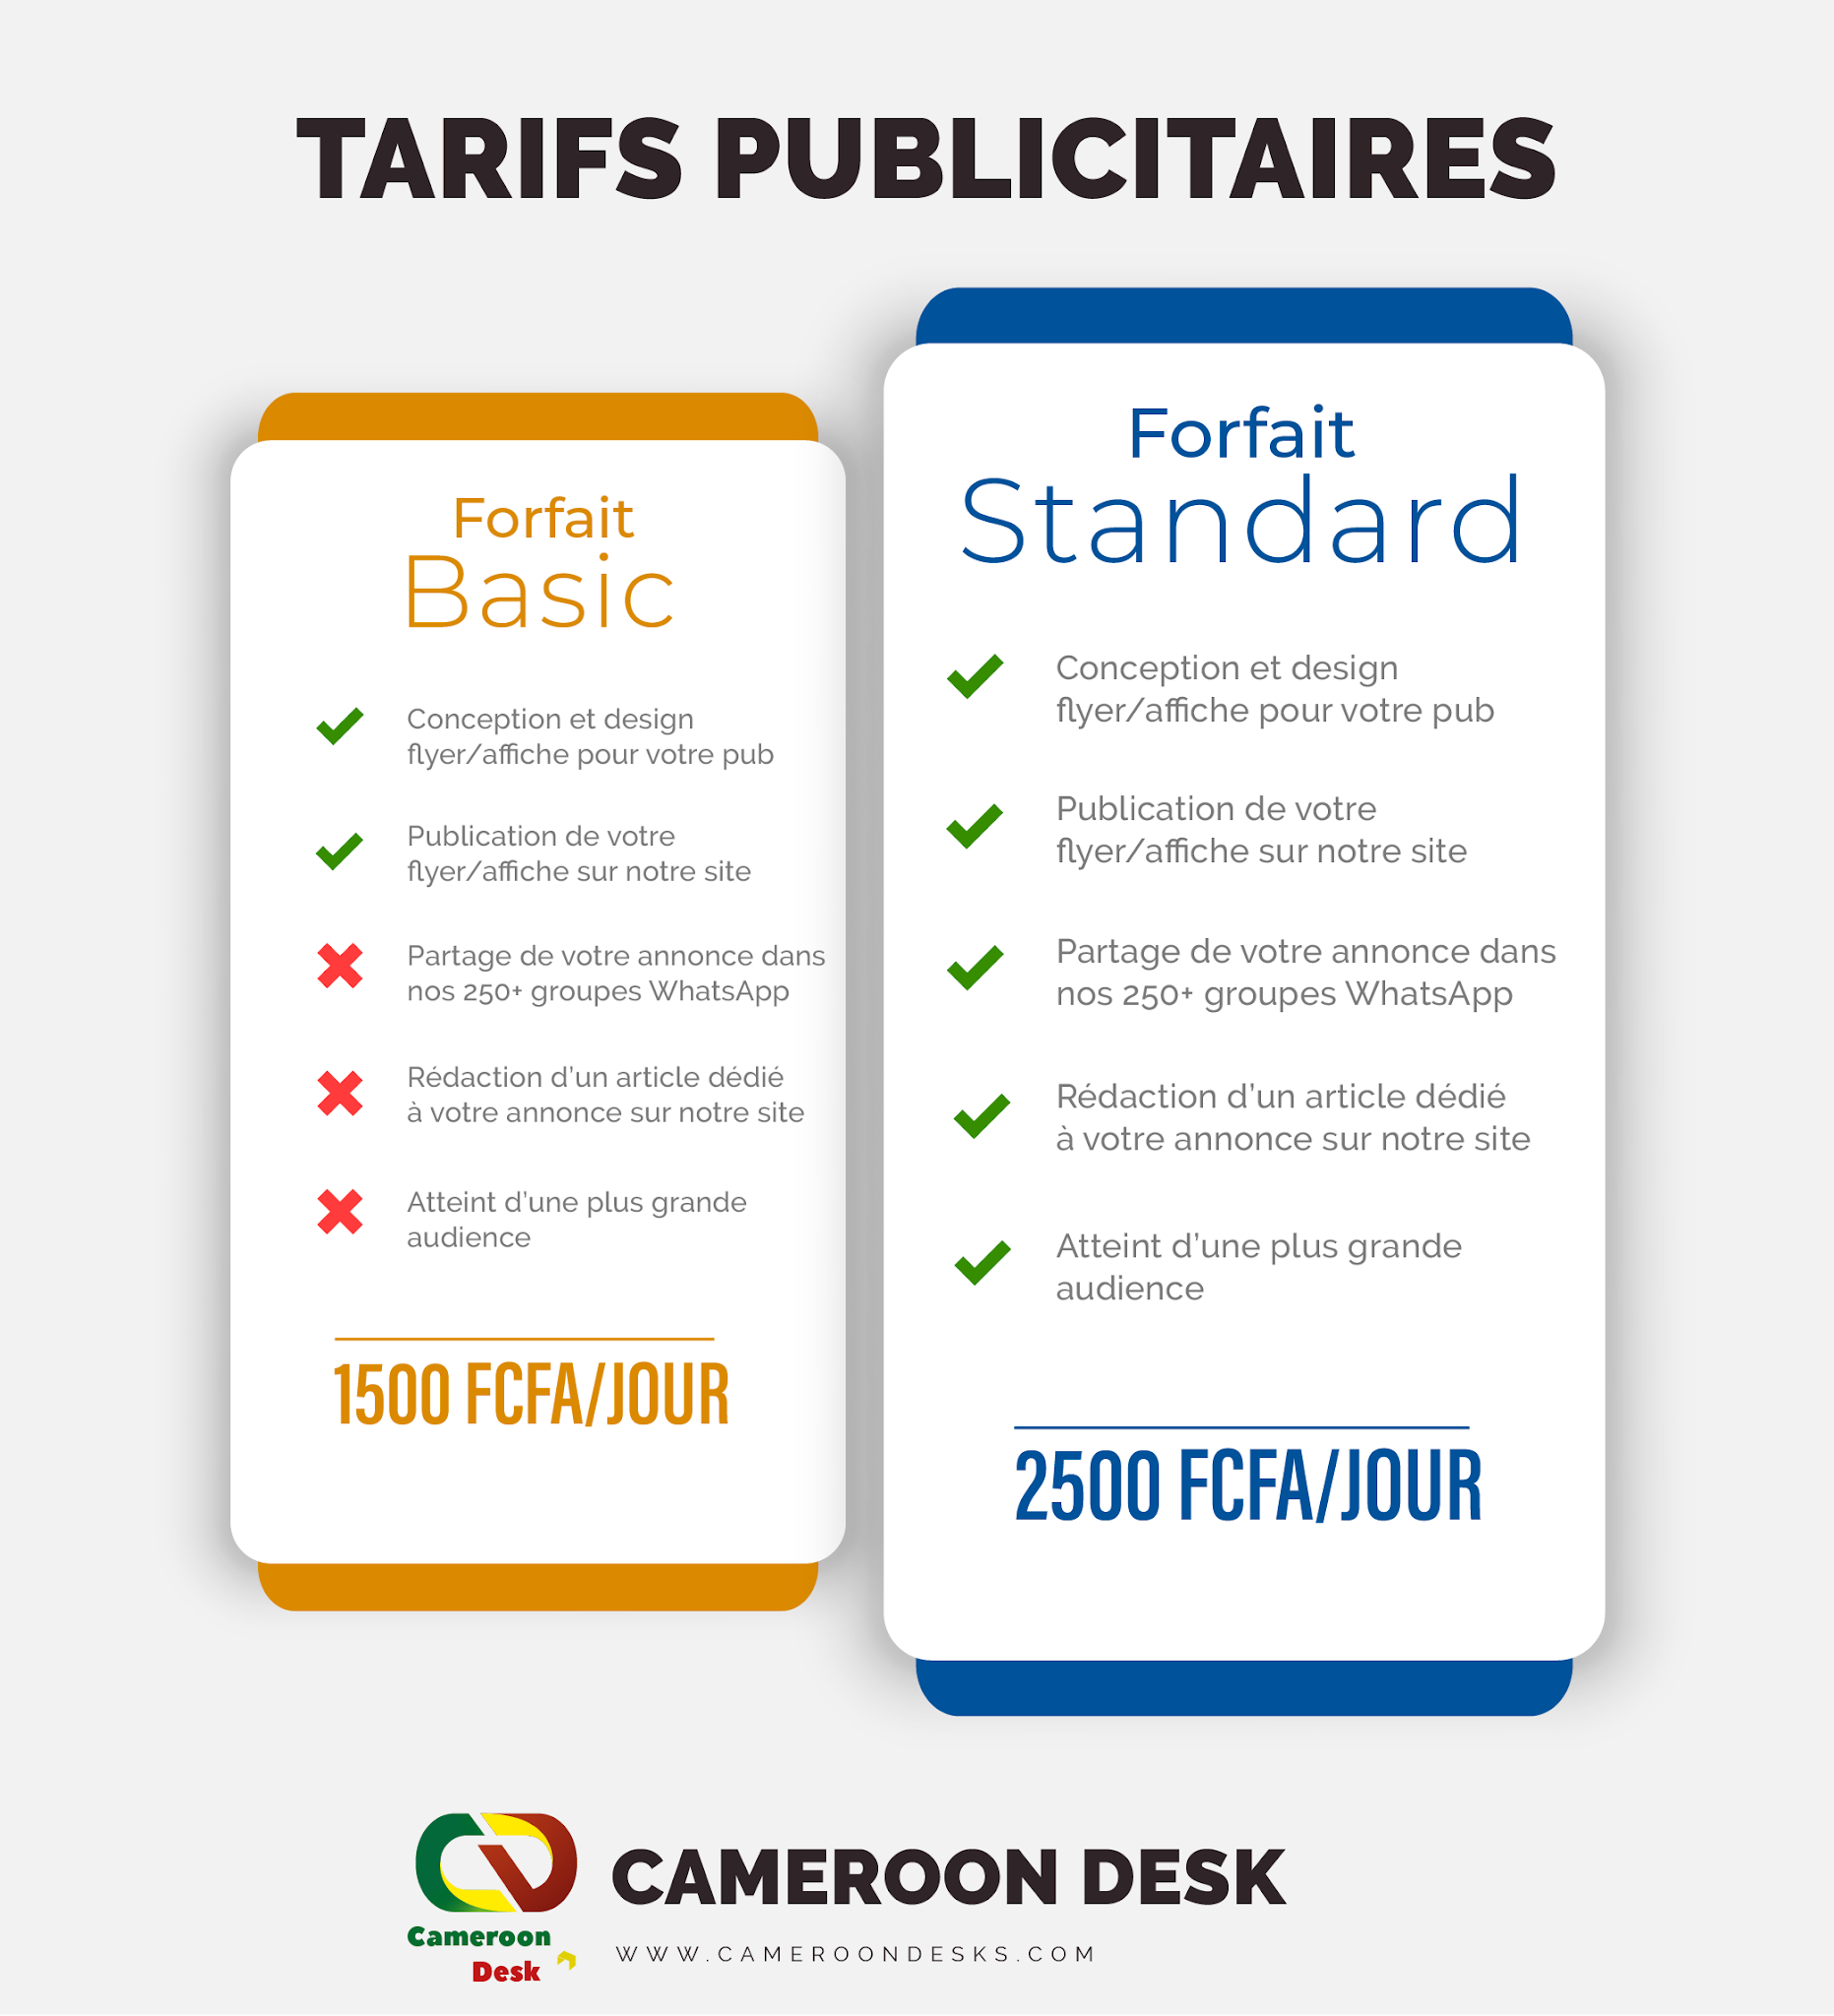 Tarifs Publicité sur Cameroon Desk